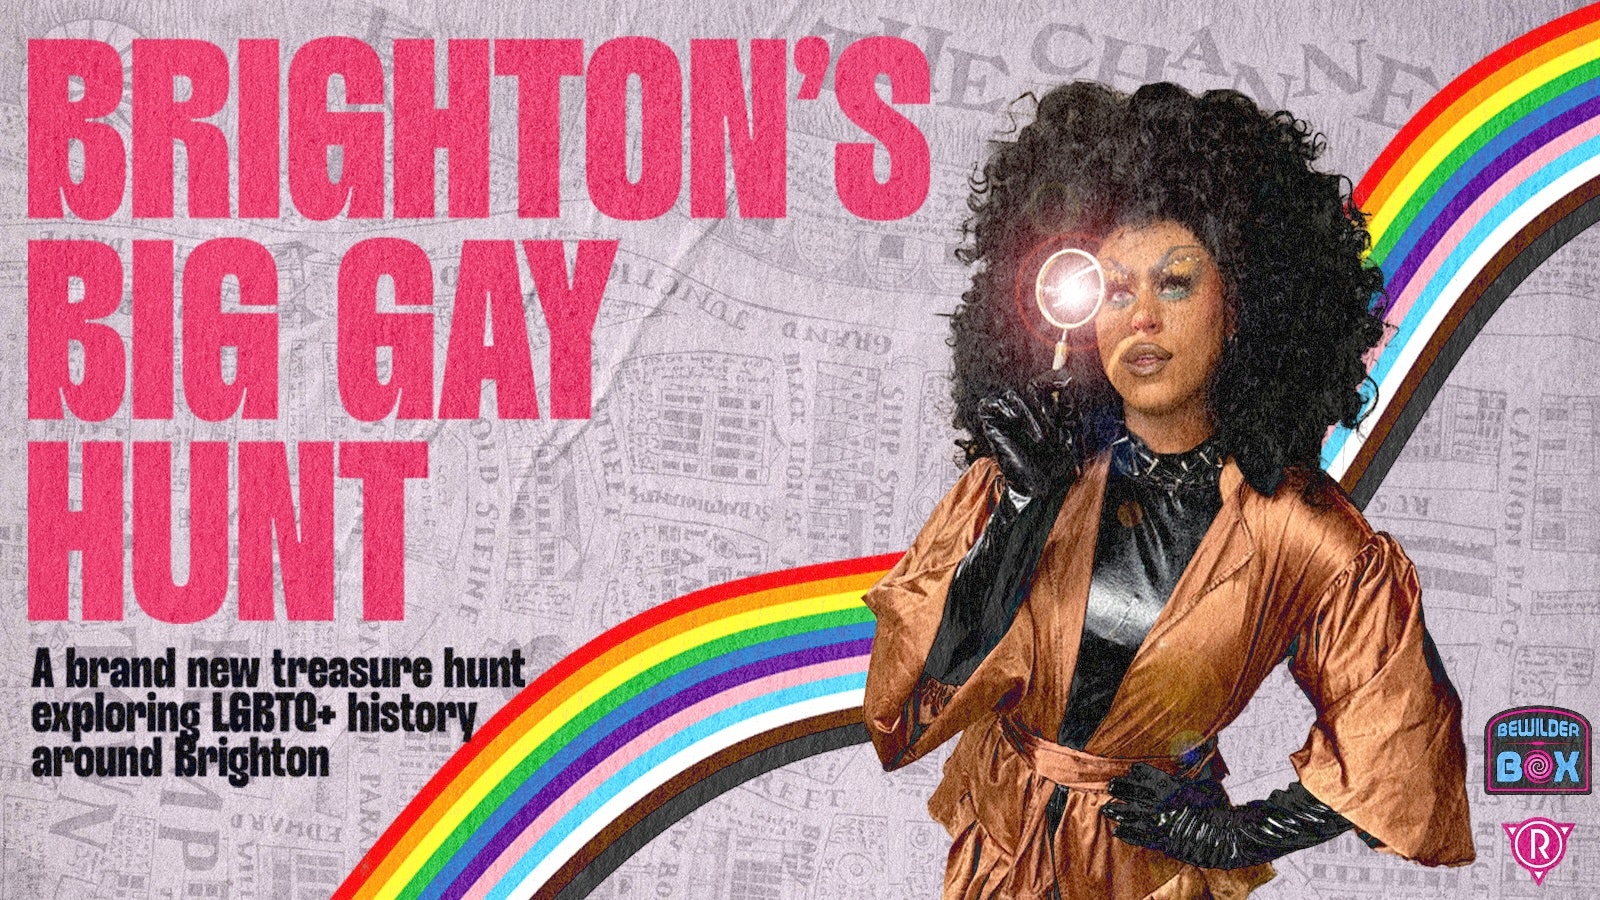 Brighton’s Big Gay Hunt: An Outdoor Puzzle Adventure – Weekend 1 & 2